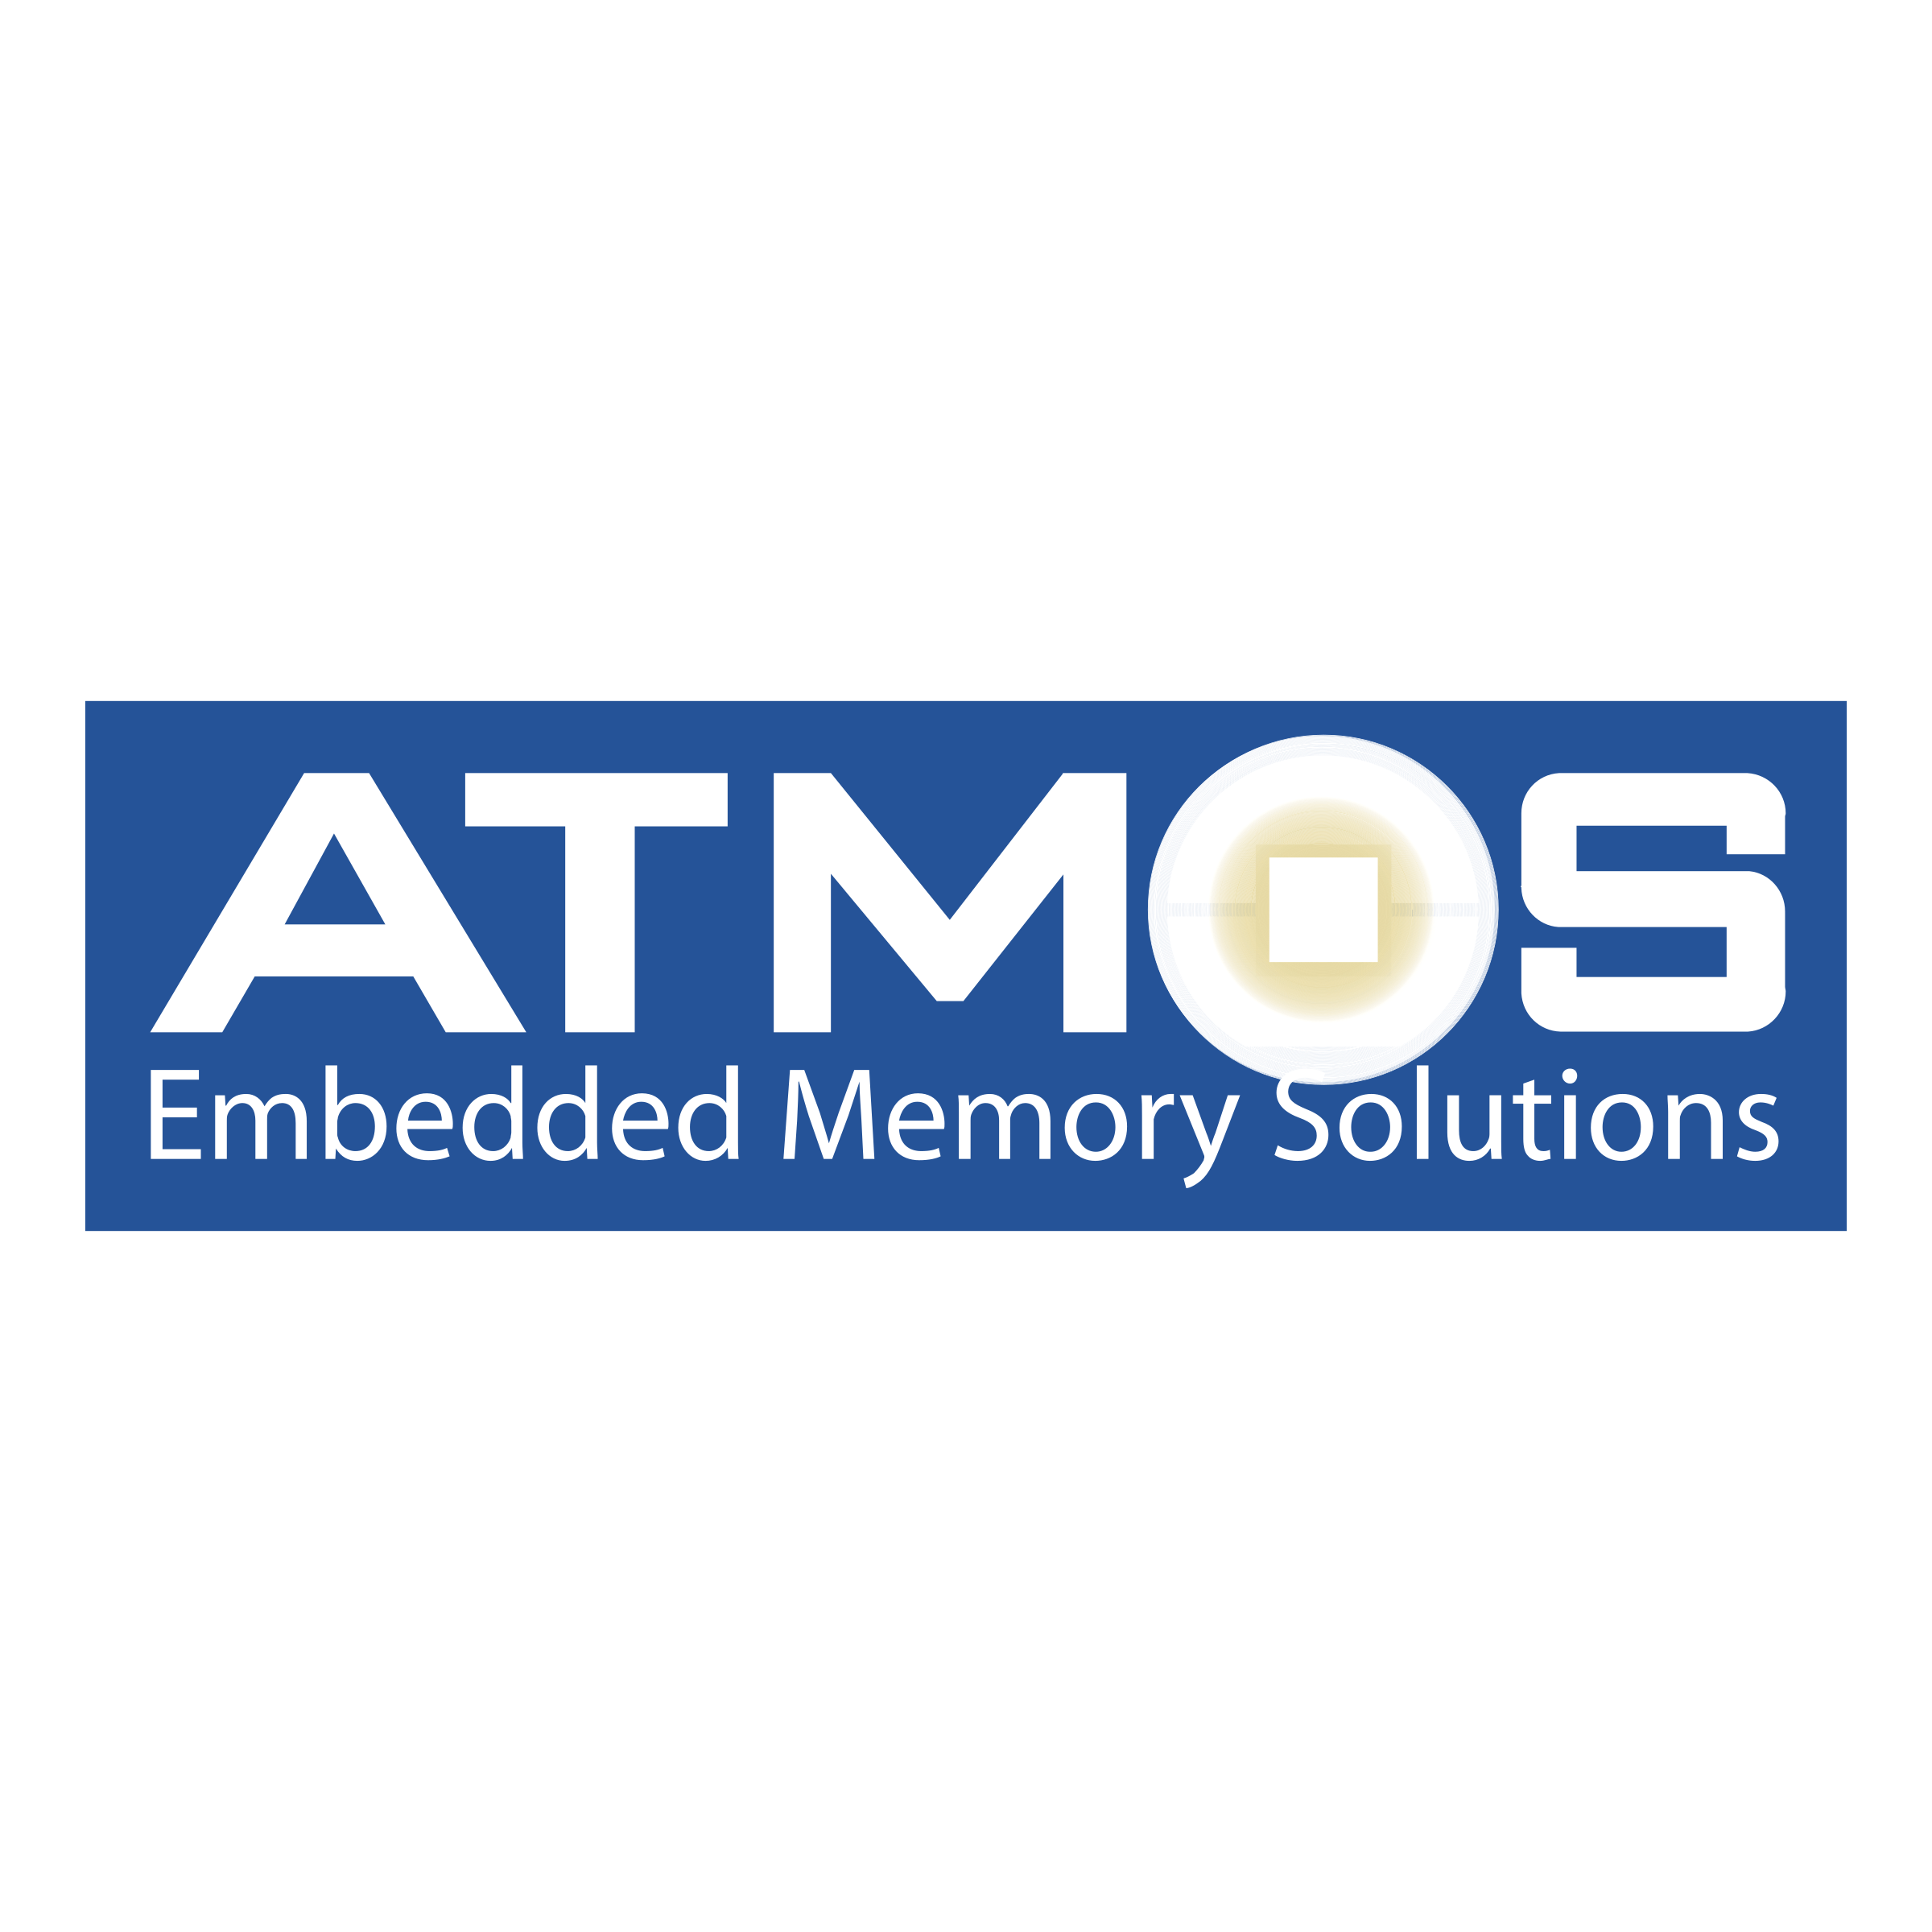 Atmos Logo - Atmos Logo PNG Transparent & SVG Vector - Freebie Supply